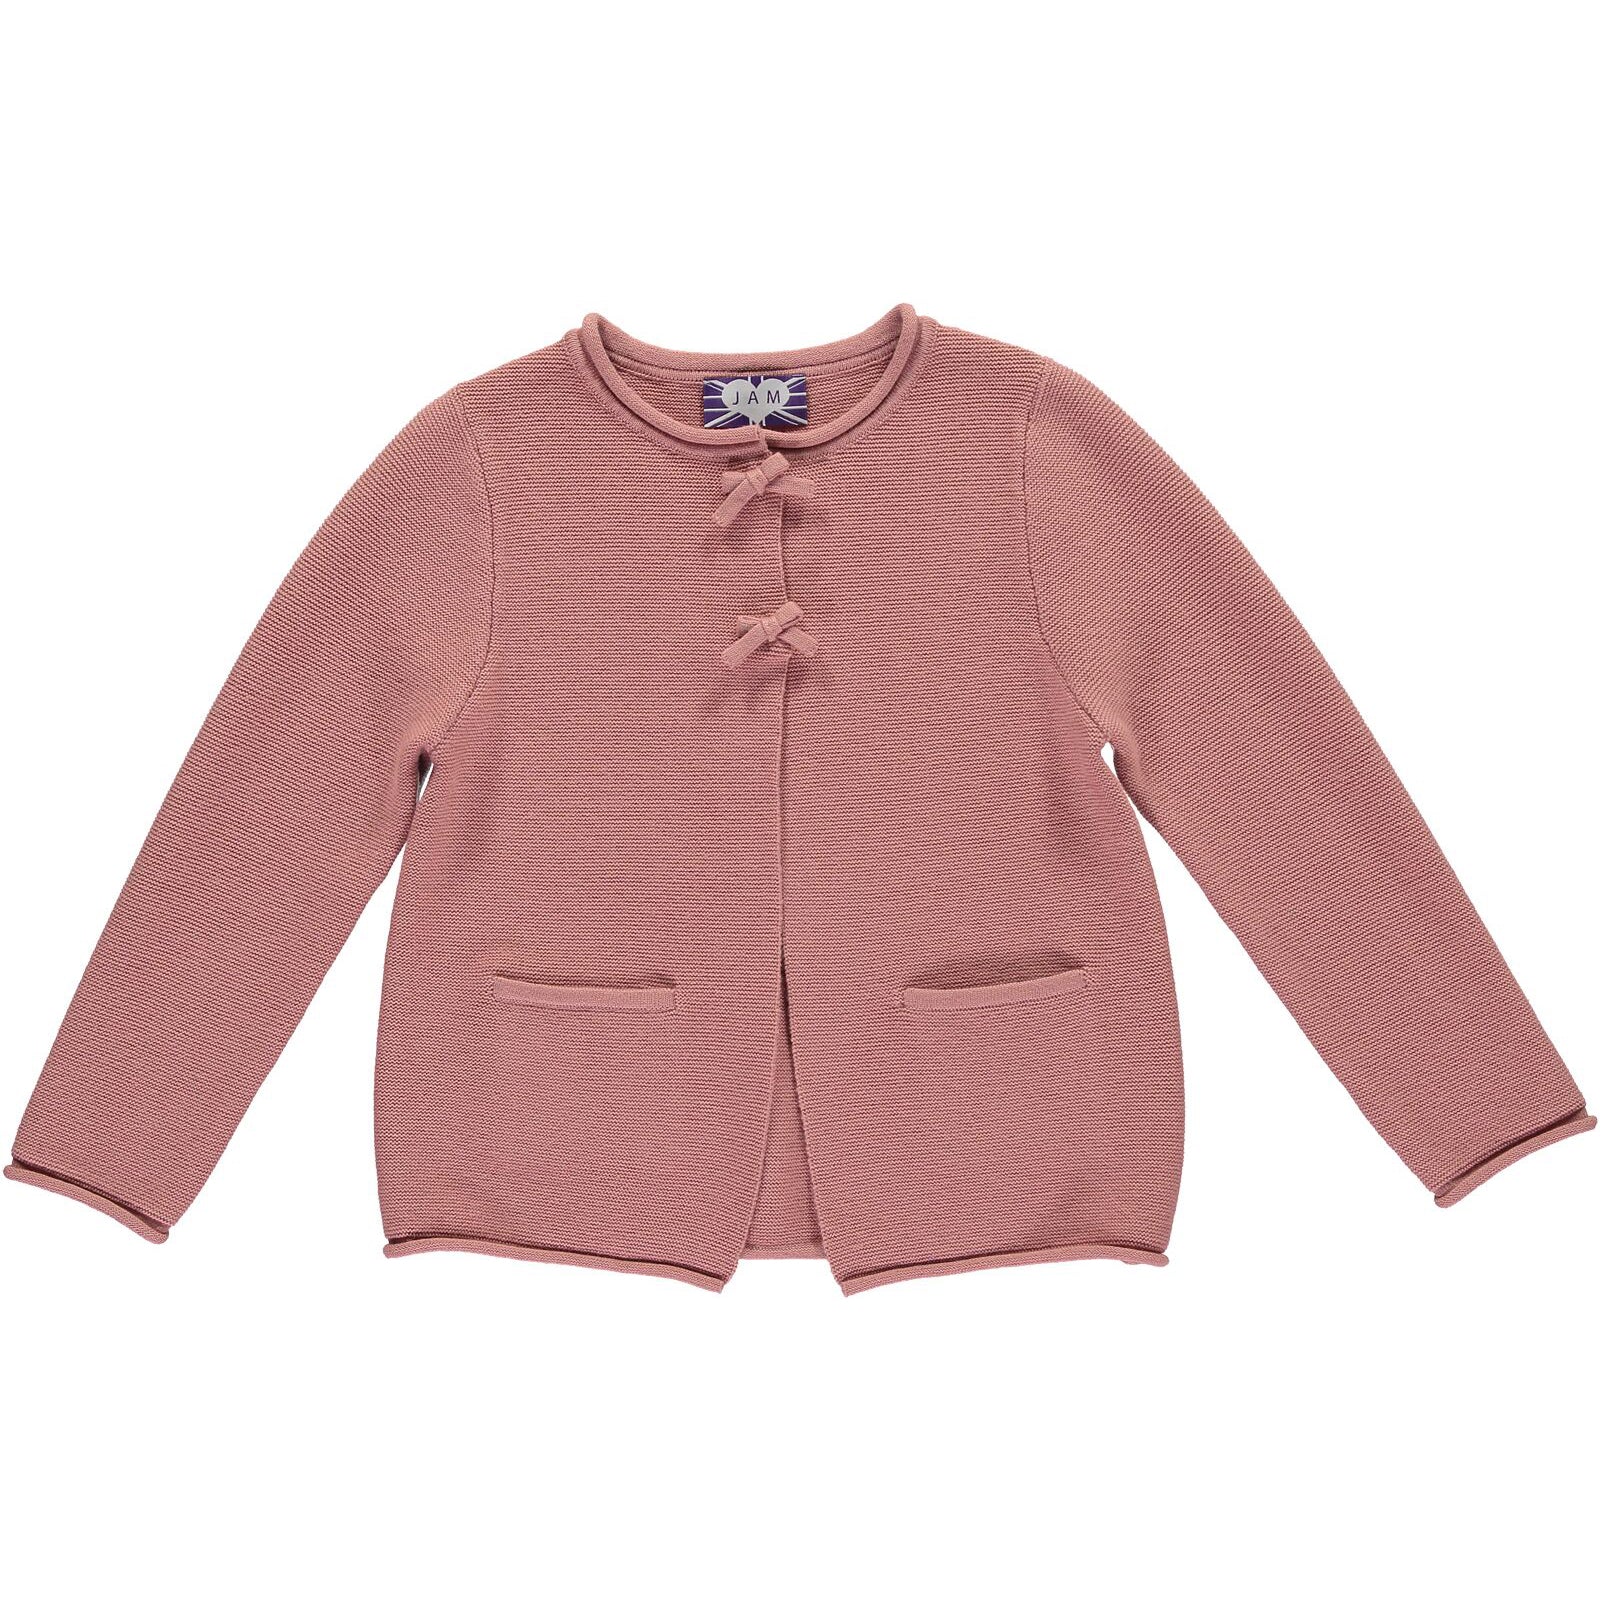 JAM London | Kidswear | Online Shop | Knitwear & Smart Casualwear